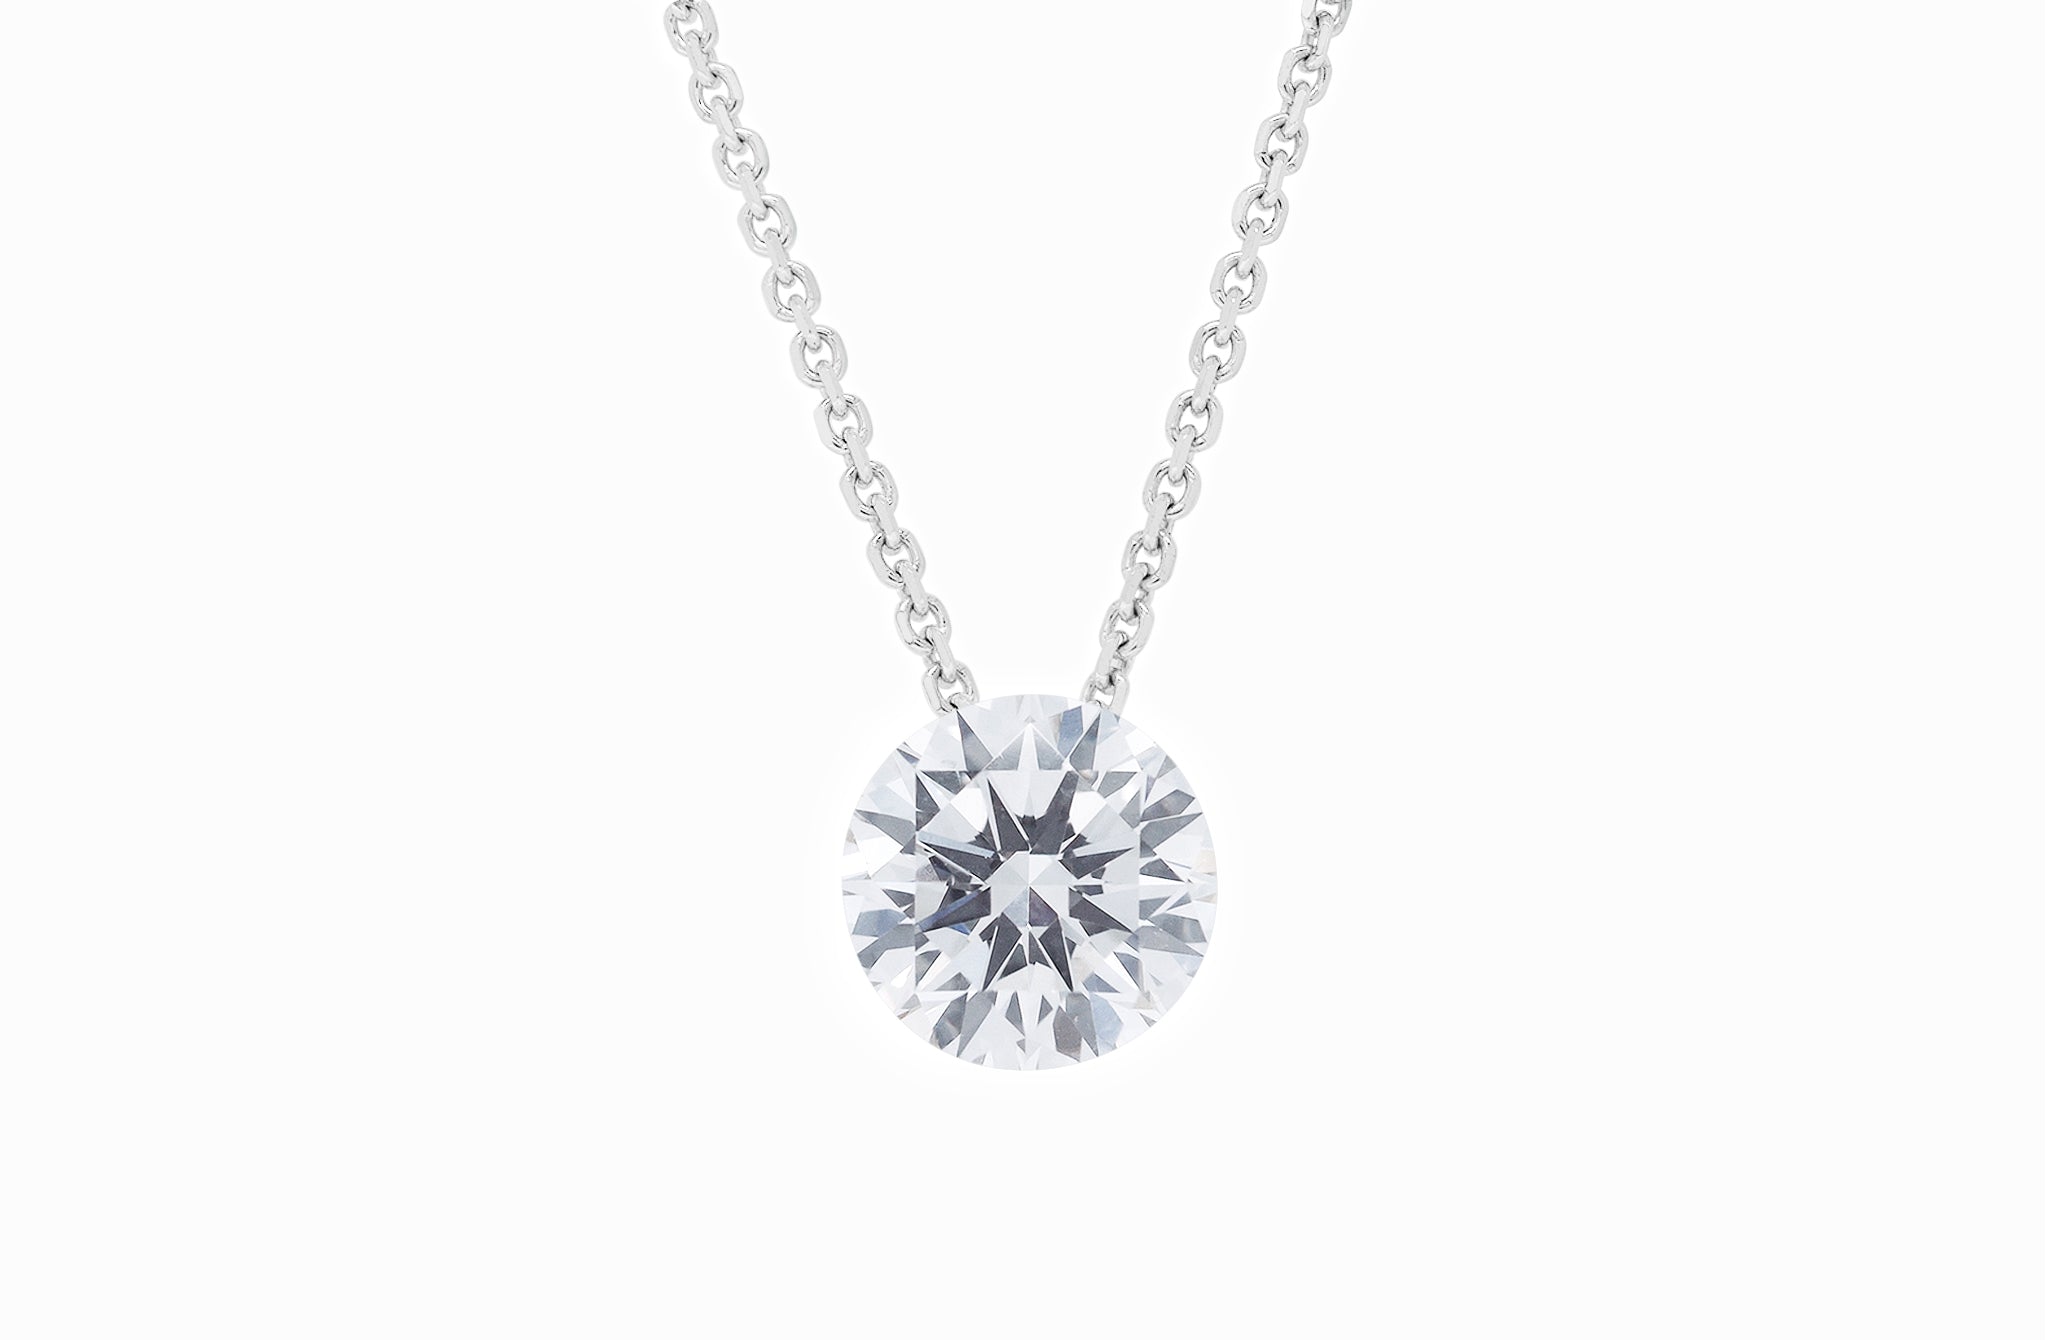 The Floeting® Diamond Pendant – Floeting